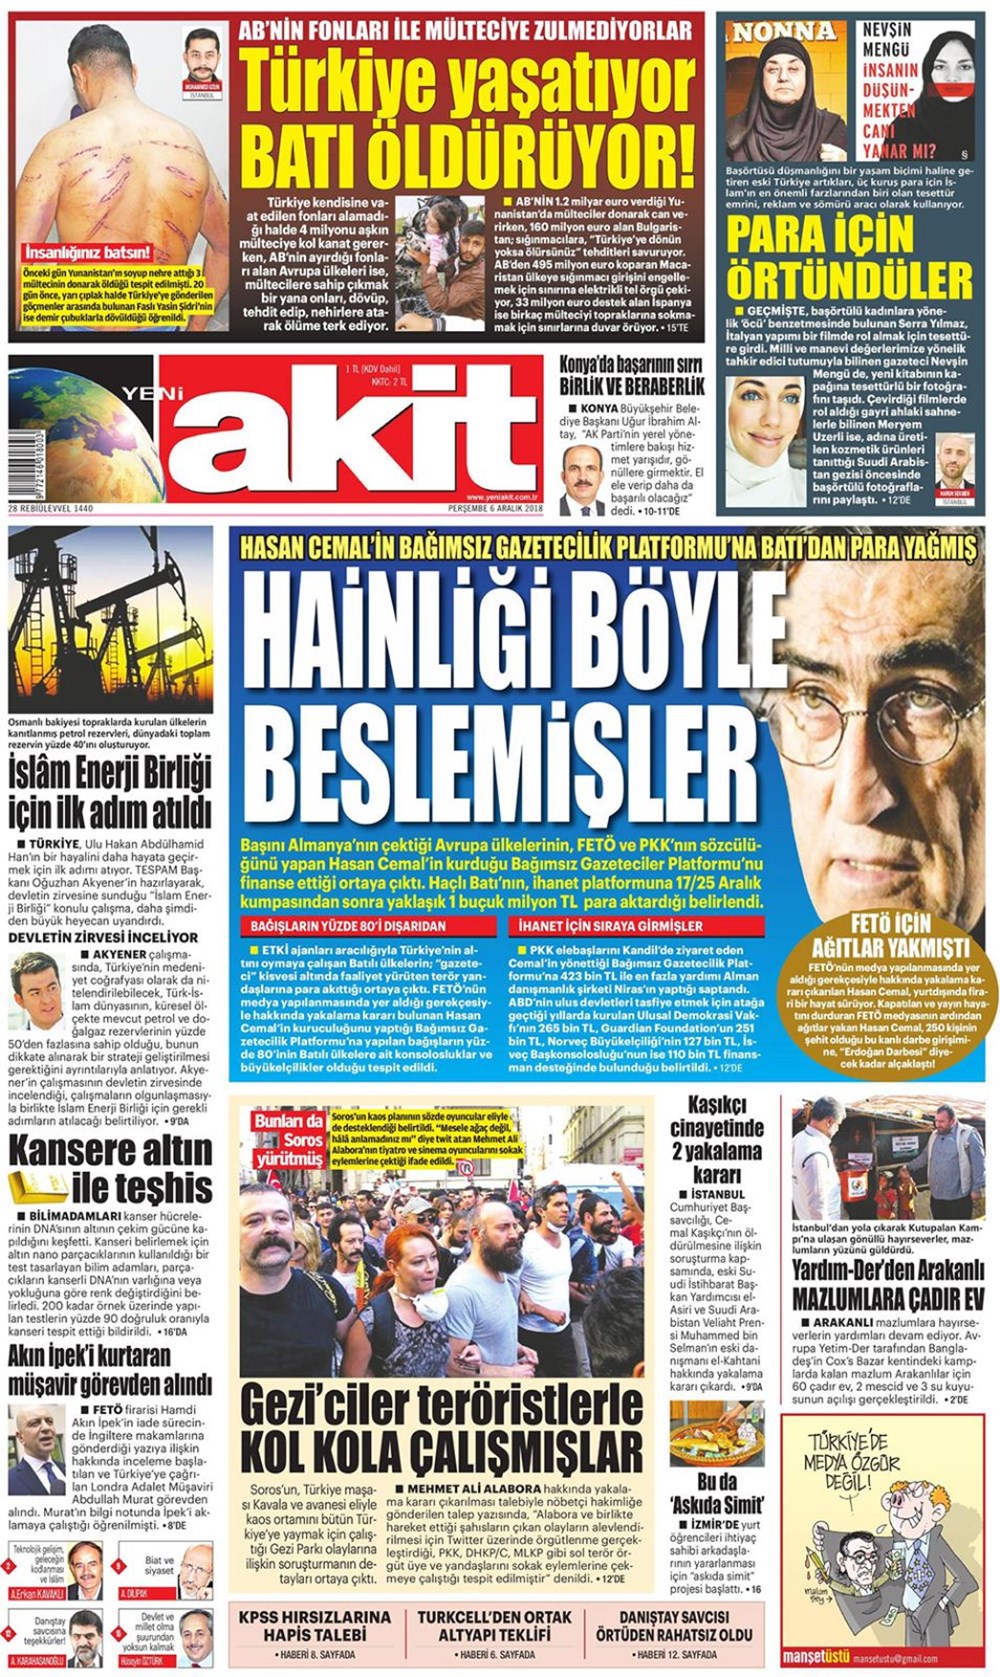 Gunun Gazete Mansetleri 6 Aralik 2018 Son Dakika Turkiye Haberleri Ntv Haber